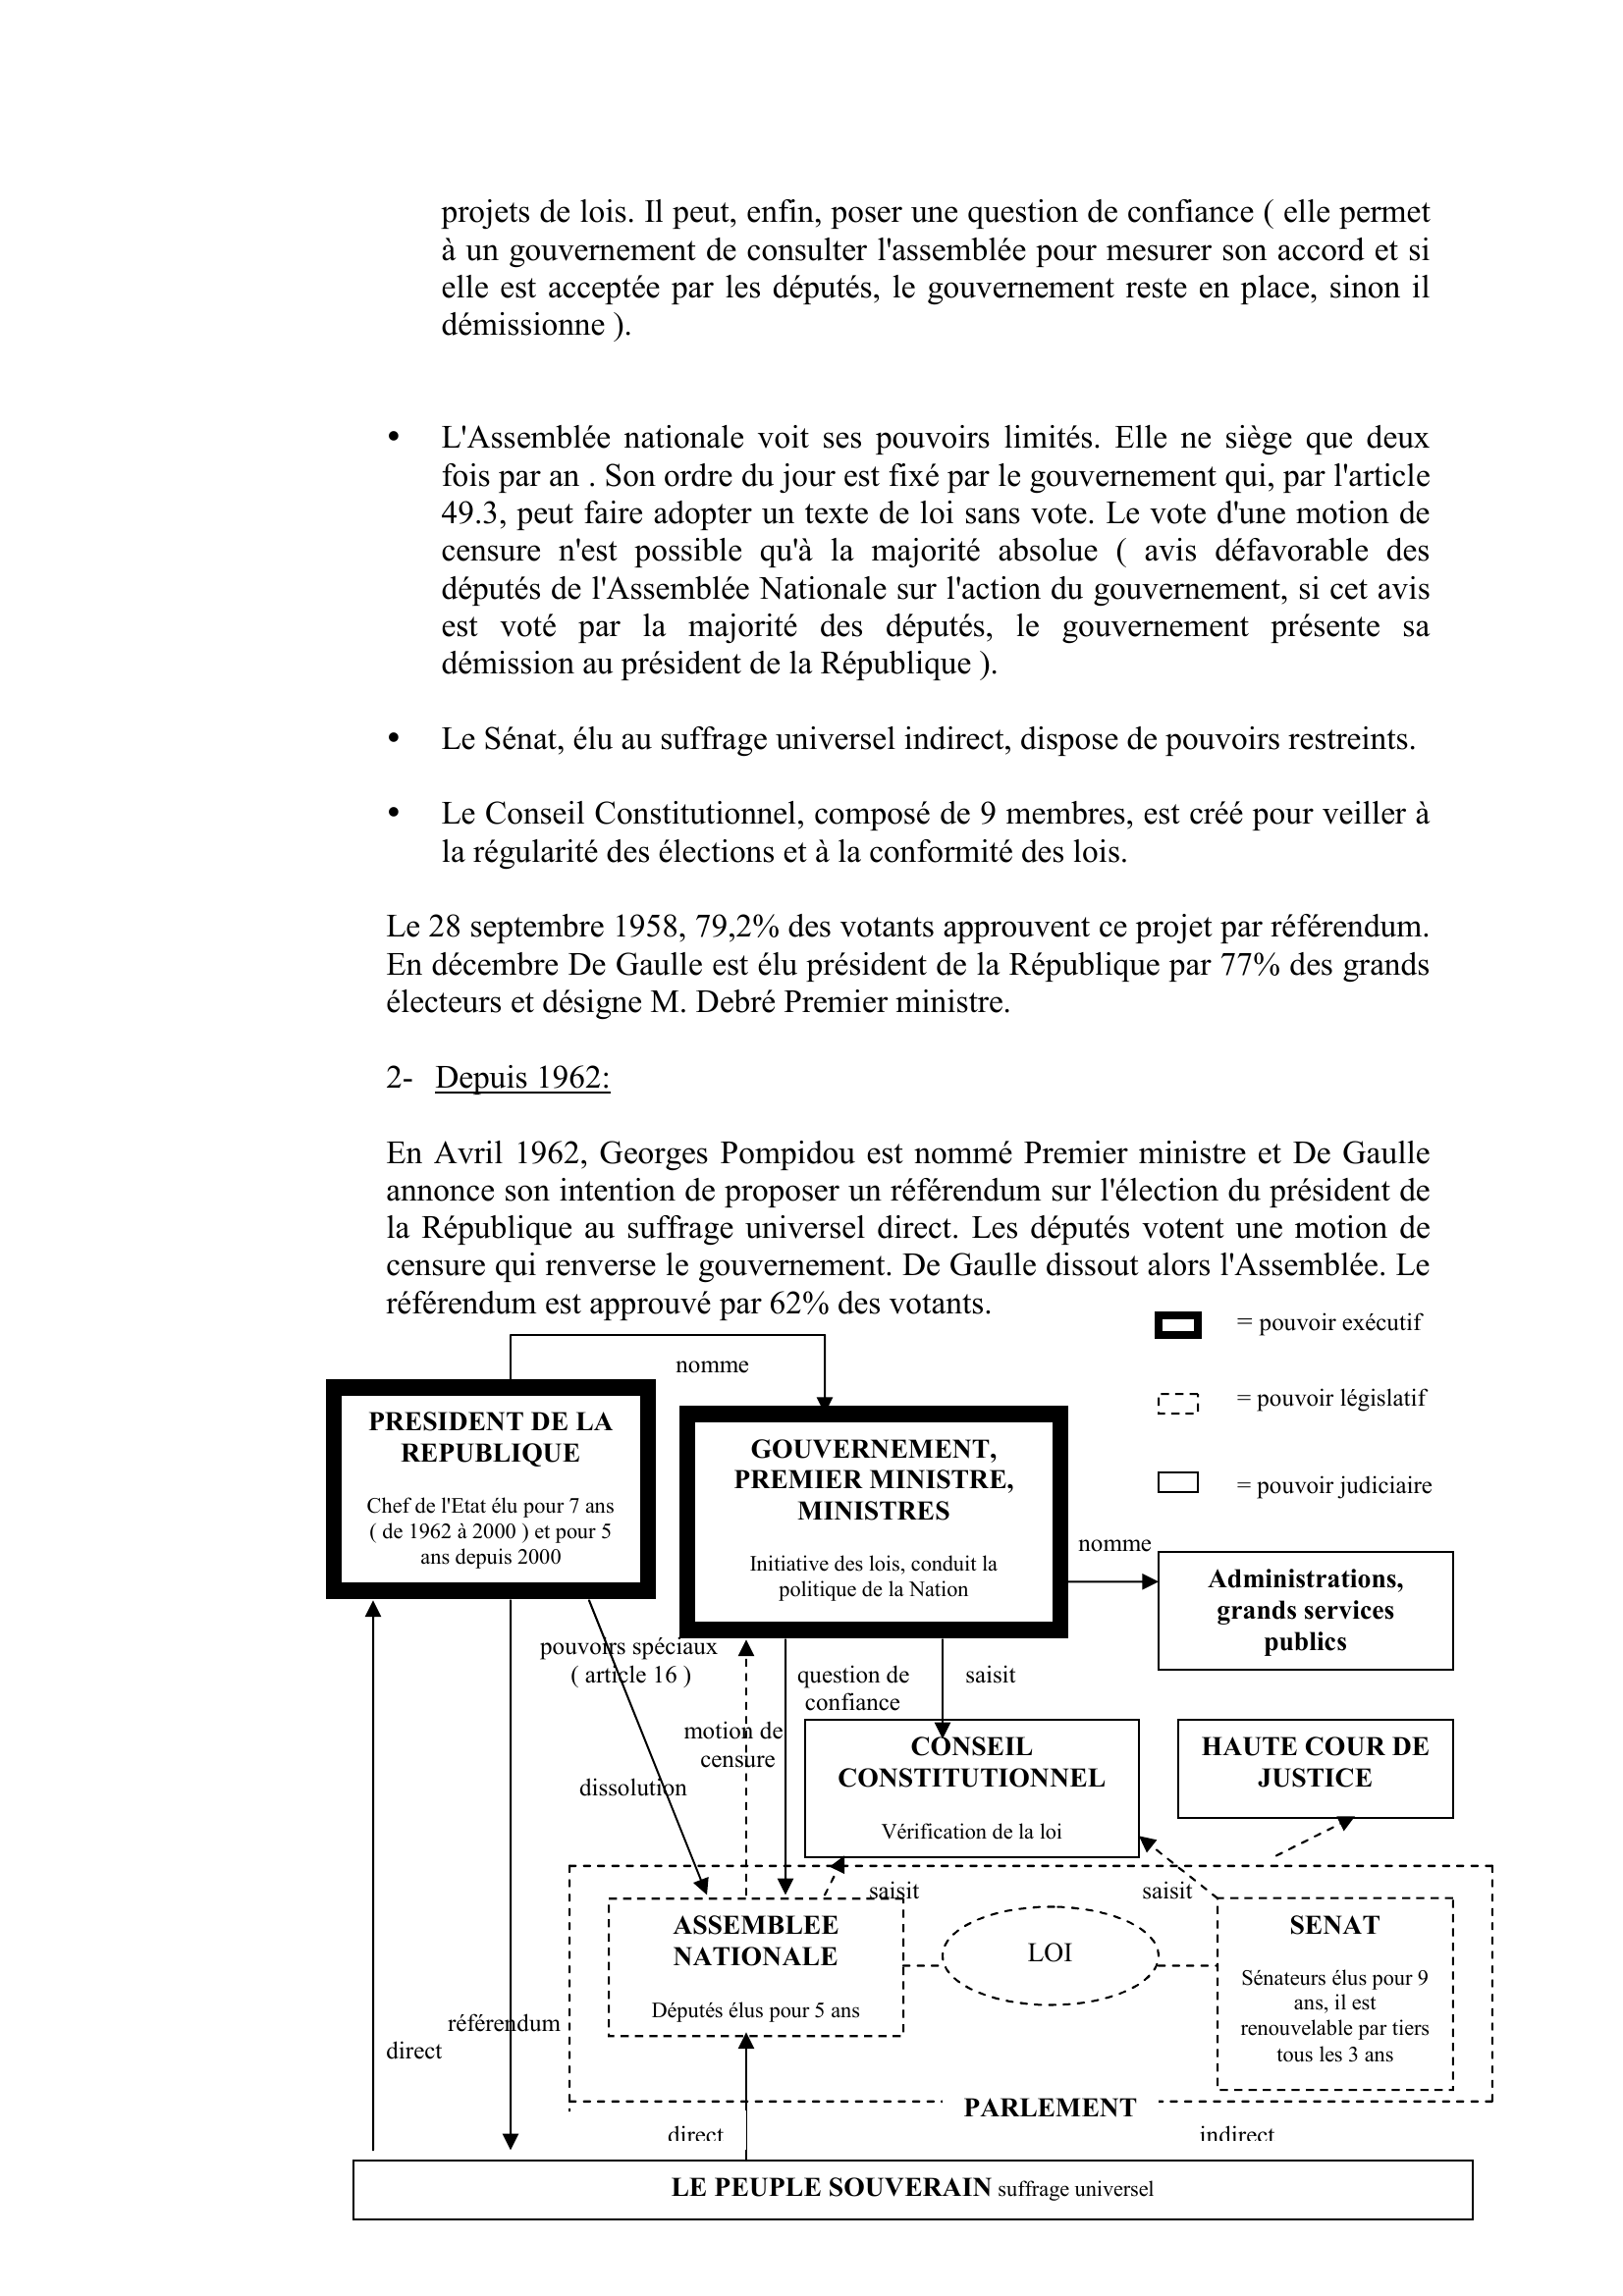 Prévisualisation du document LA Vème REPUBLIQUE:
Fiche crée par sylvain d'après un site sur la Véme république.